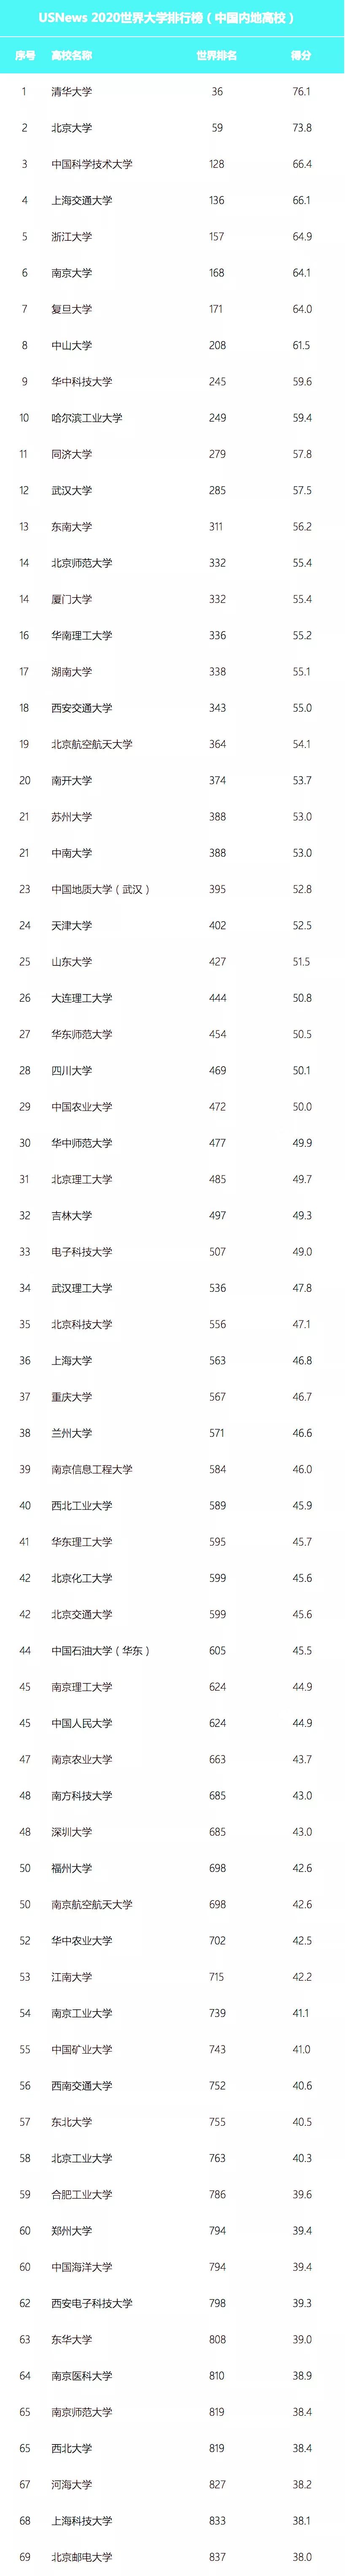 2020USNews世界大学排名中国上榜高校名单公布，共223所高校上榜！